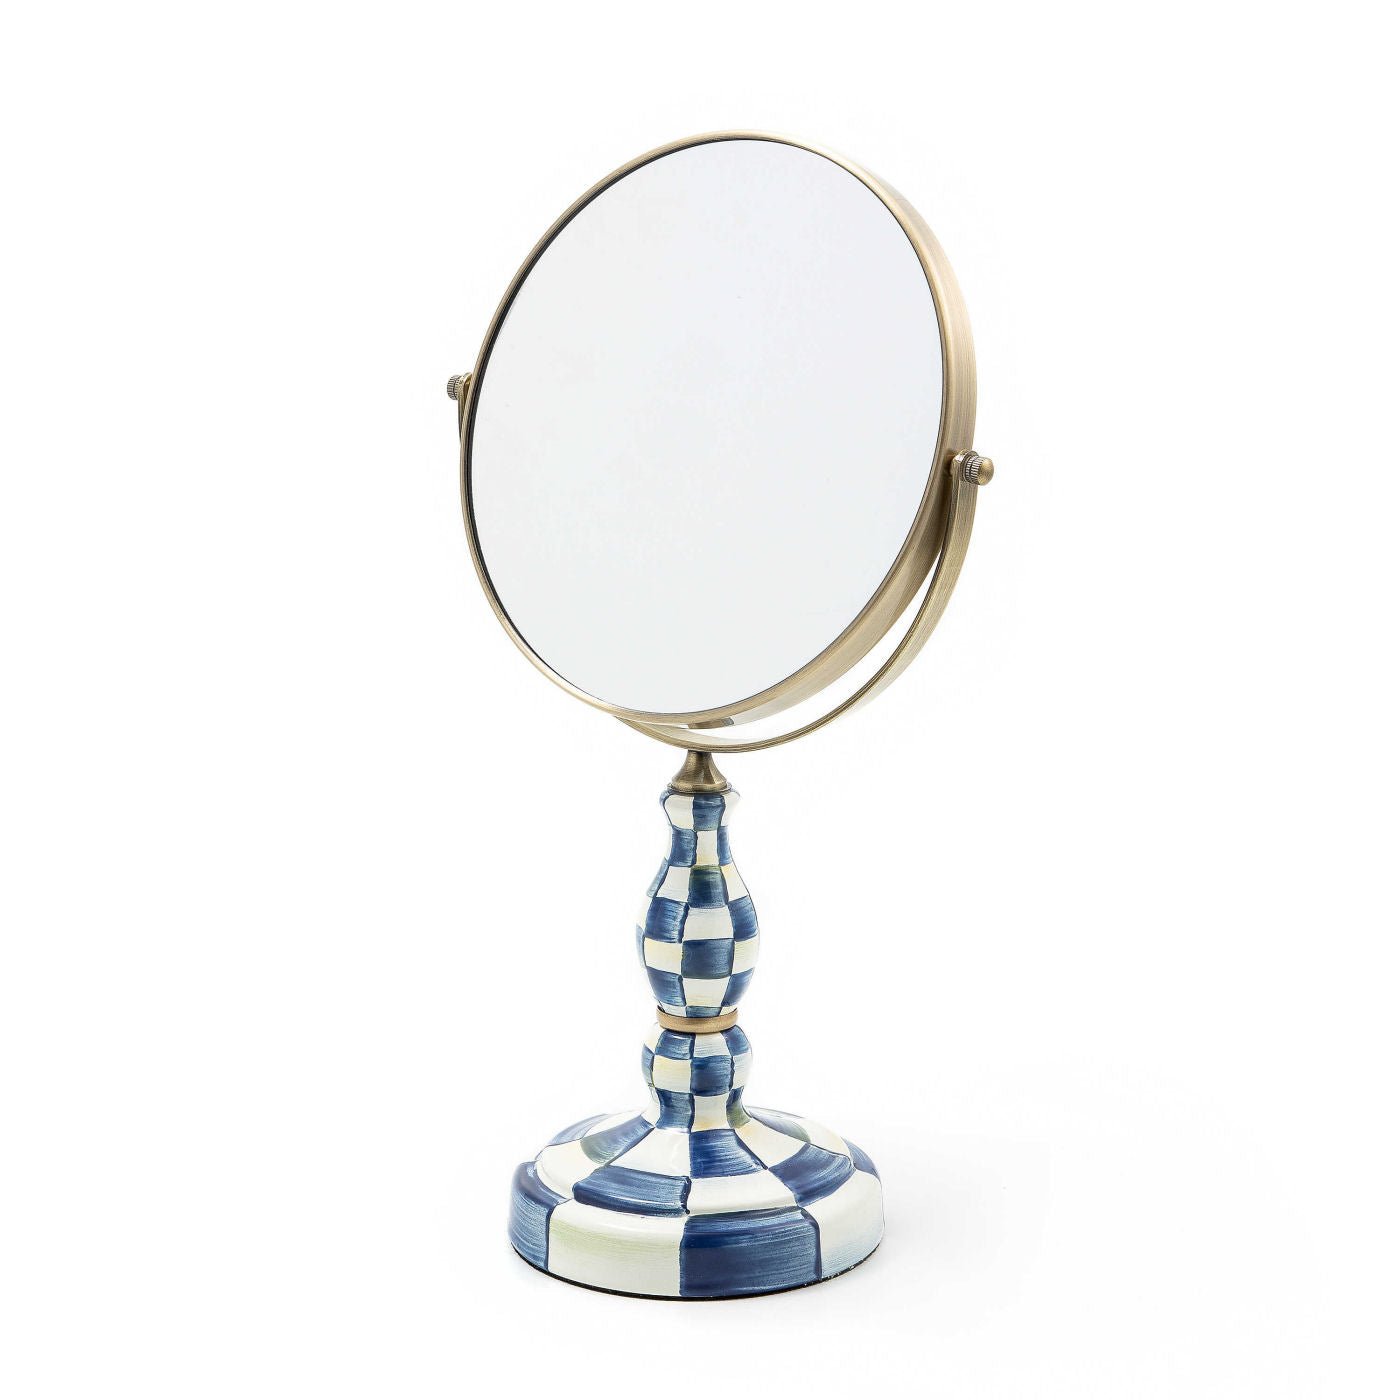 Royal Check Enamel Vanity Mirror by Mackenzie-Childs - |VESIMI Design|